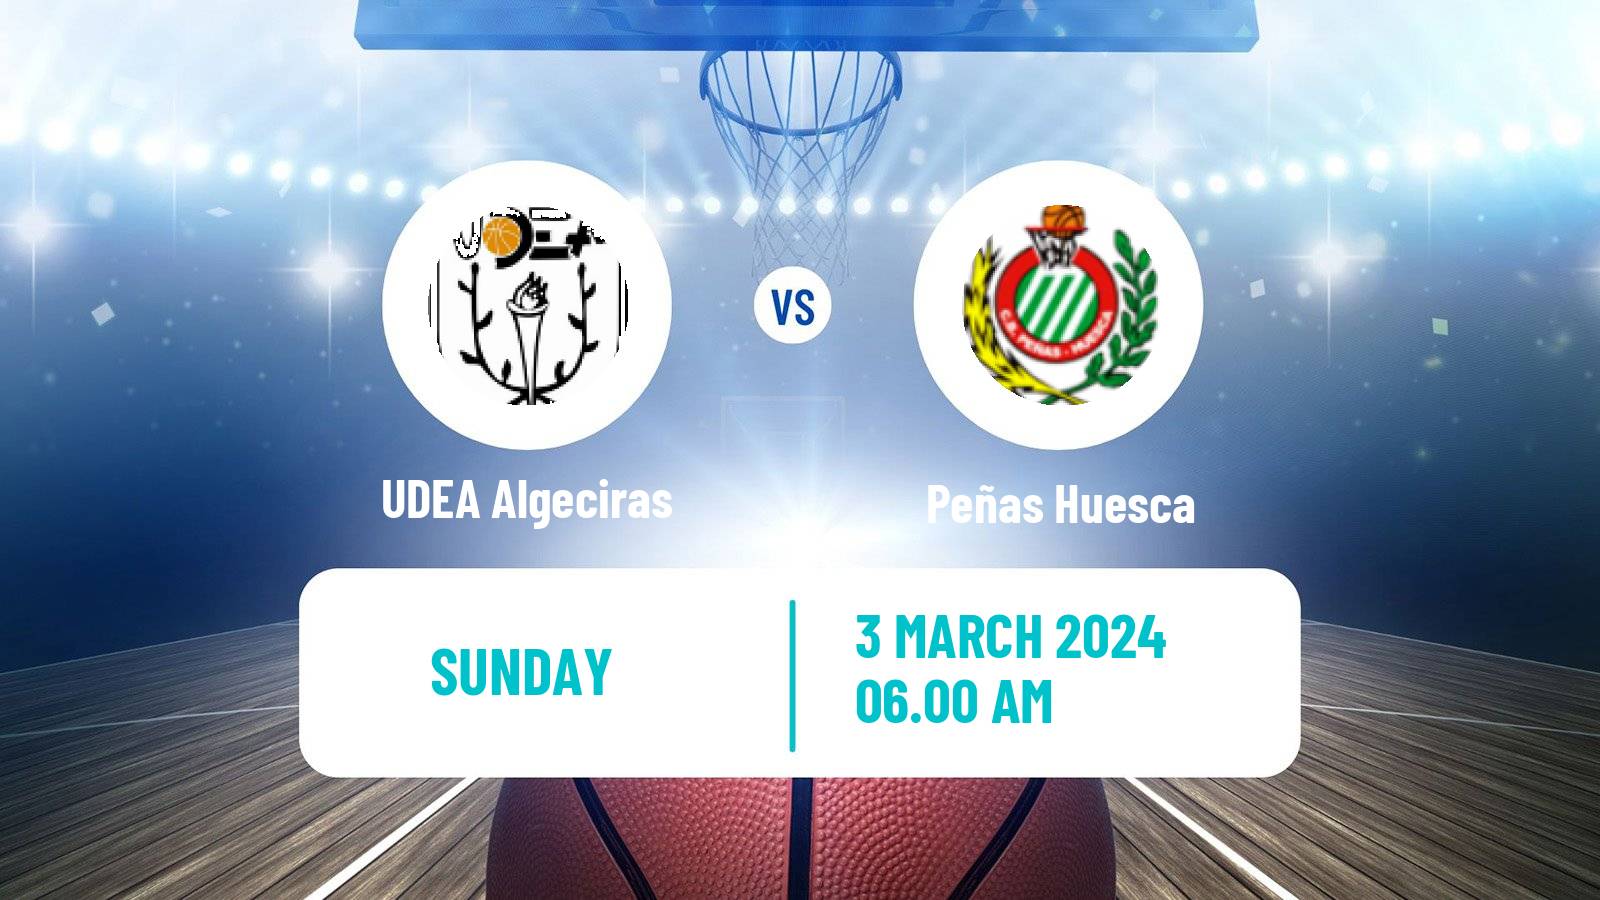 Basketball Spanish LEB Plata UDEA Algeciras - Peñas Huesca